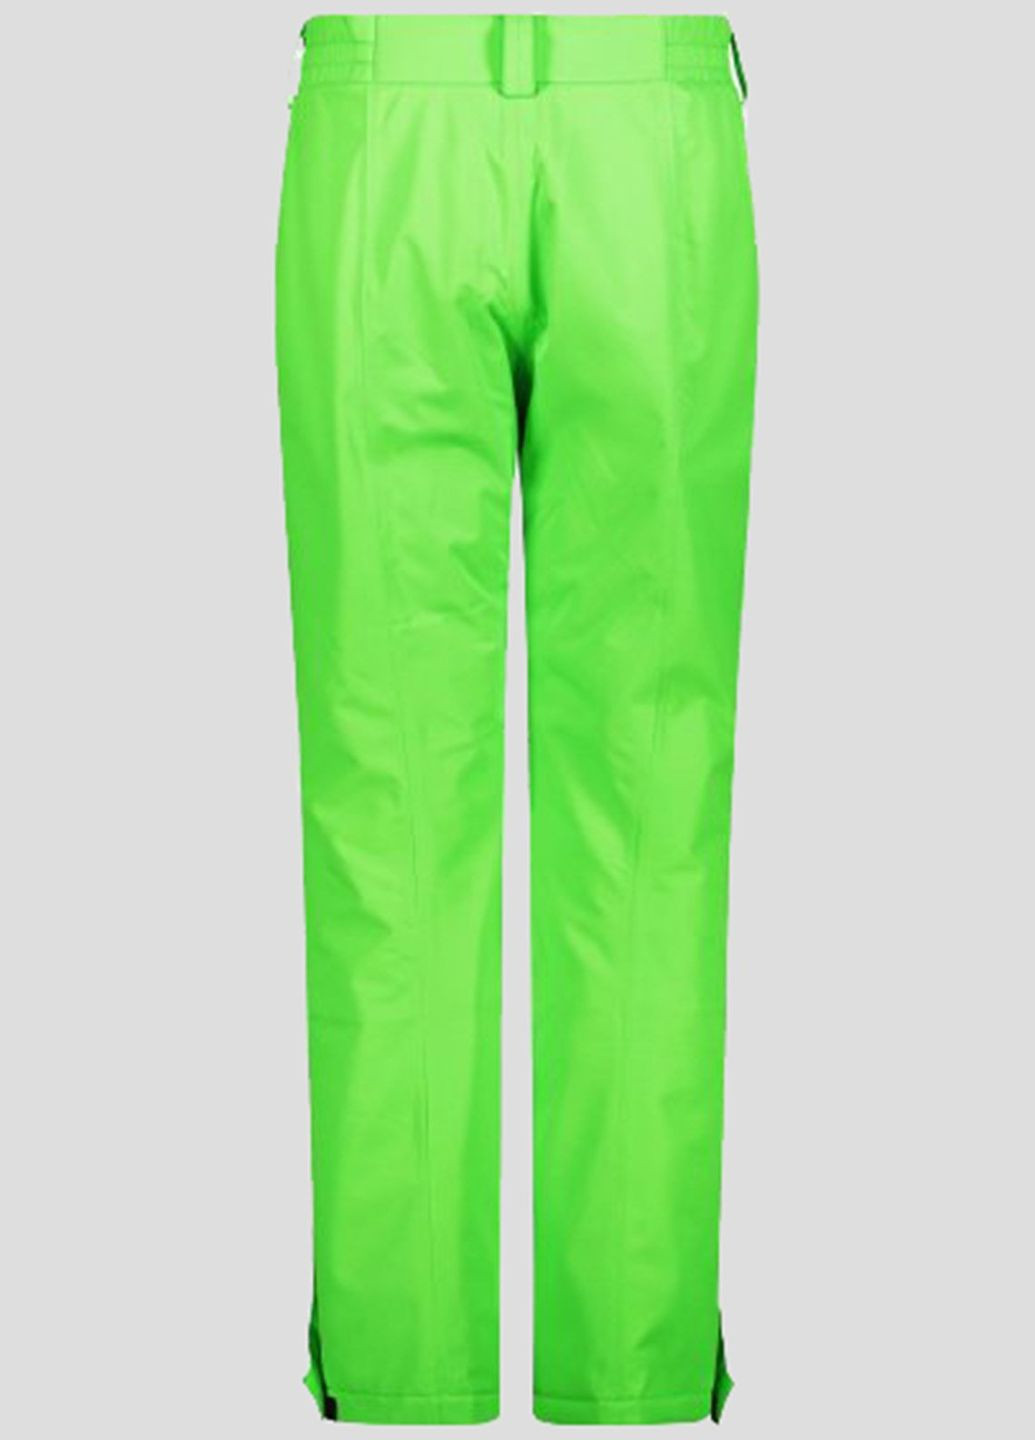 Салатовые лыжные брюки Woman Pant CMP (260362515)